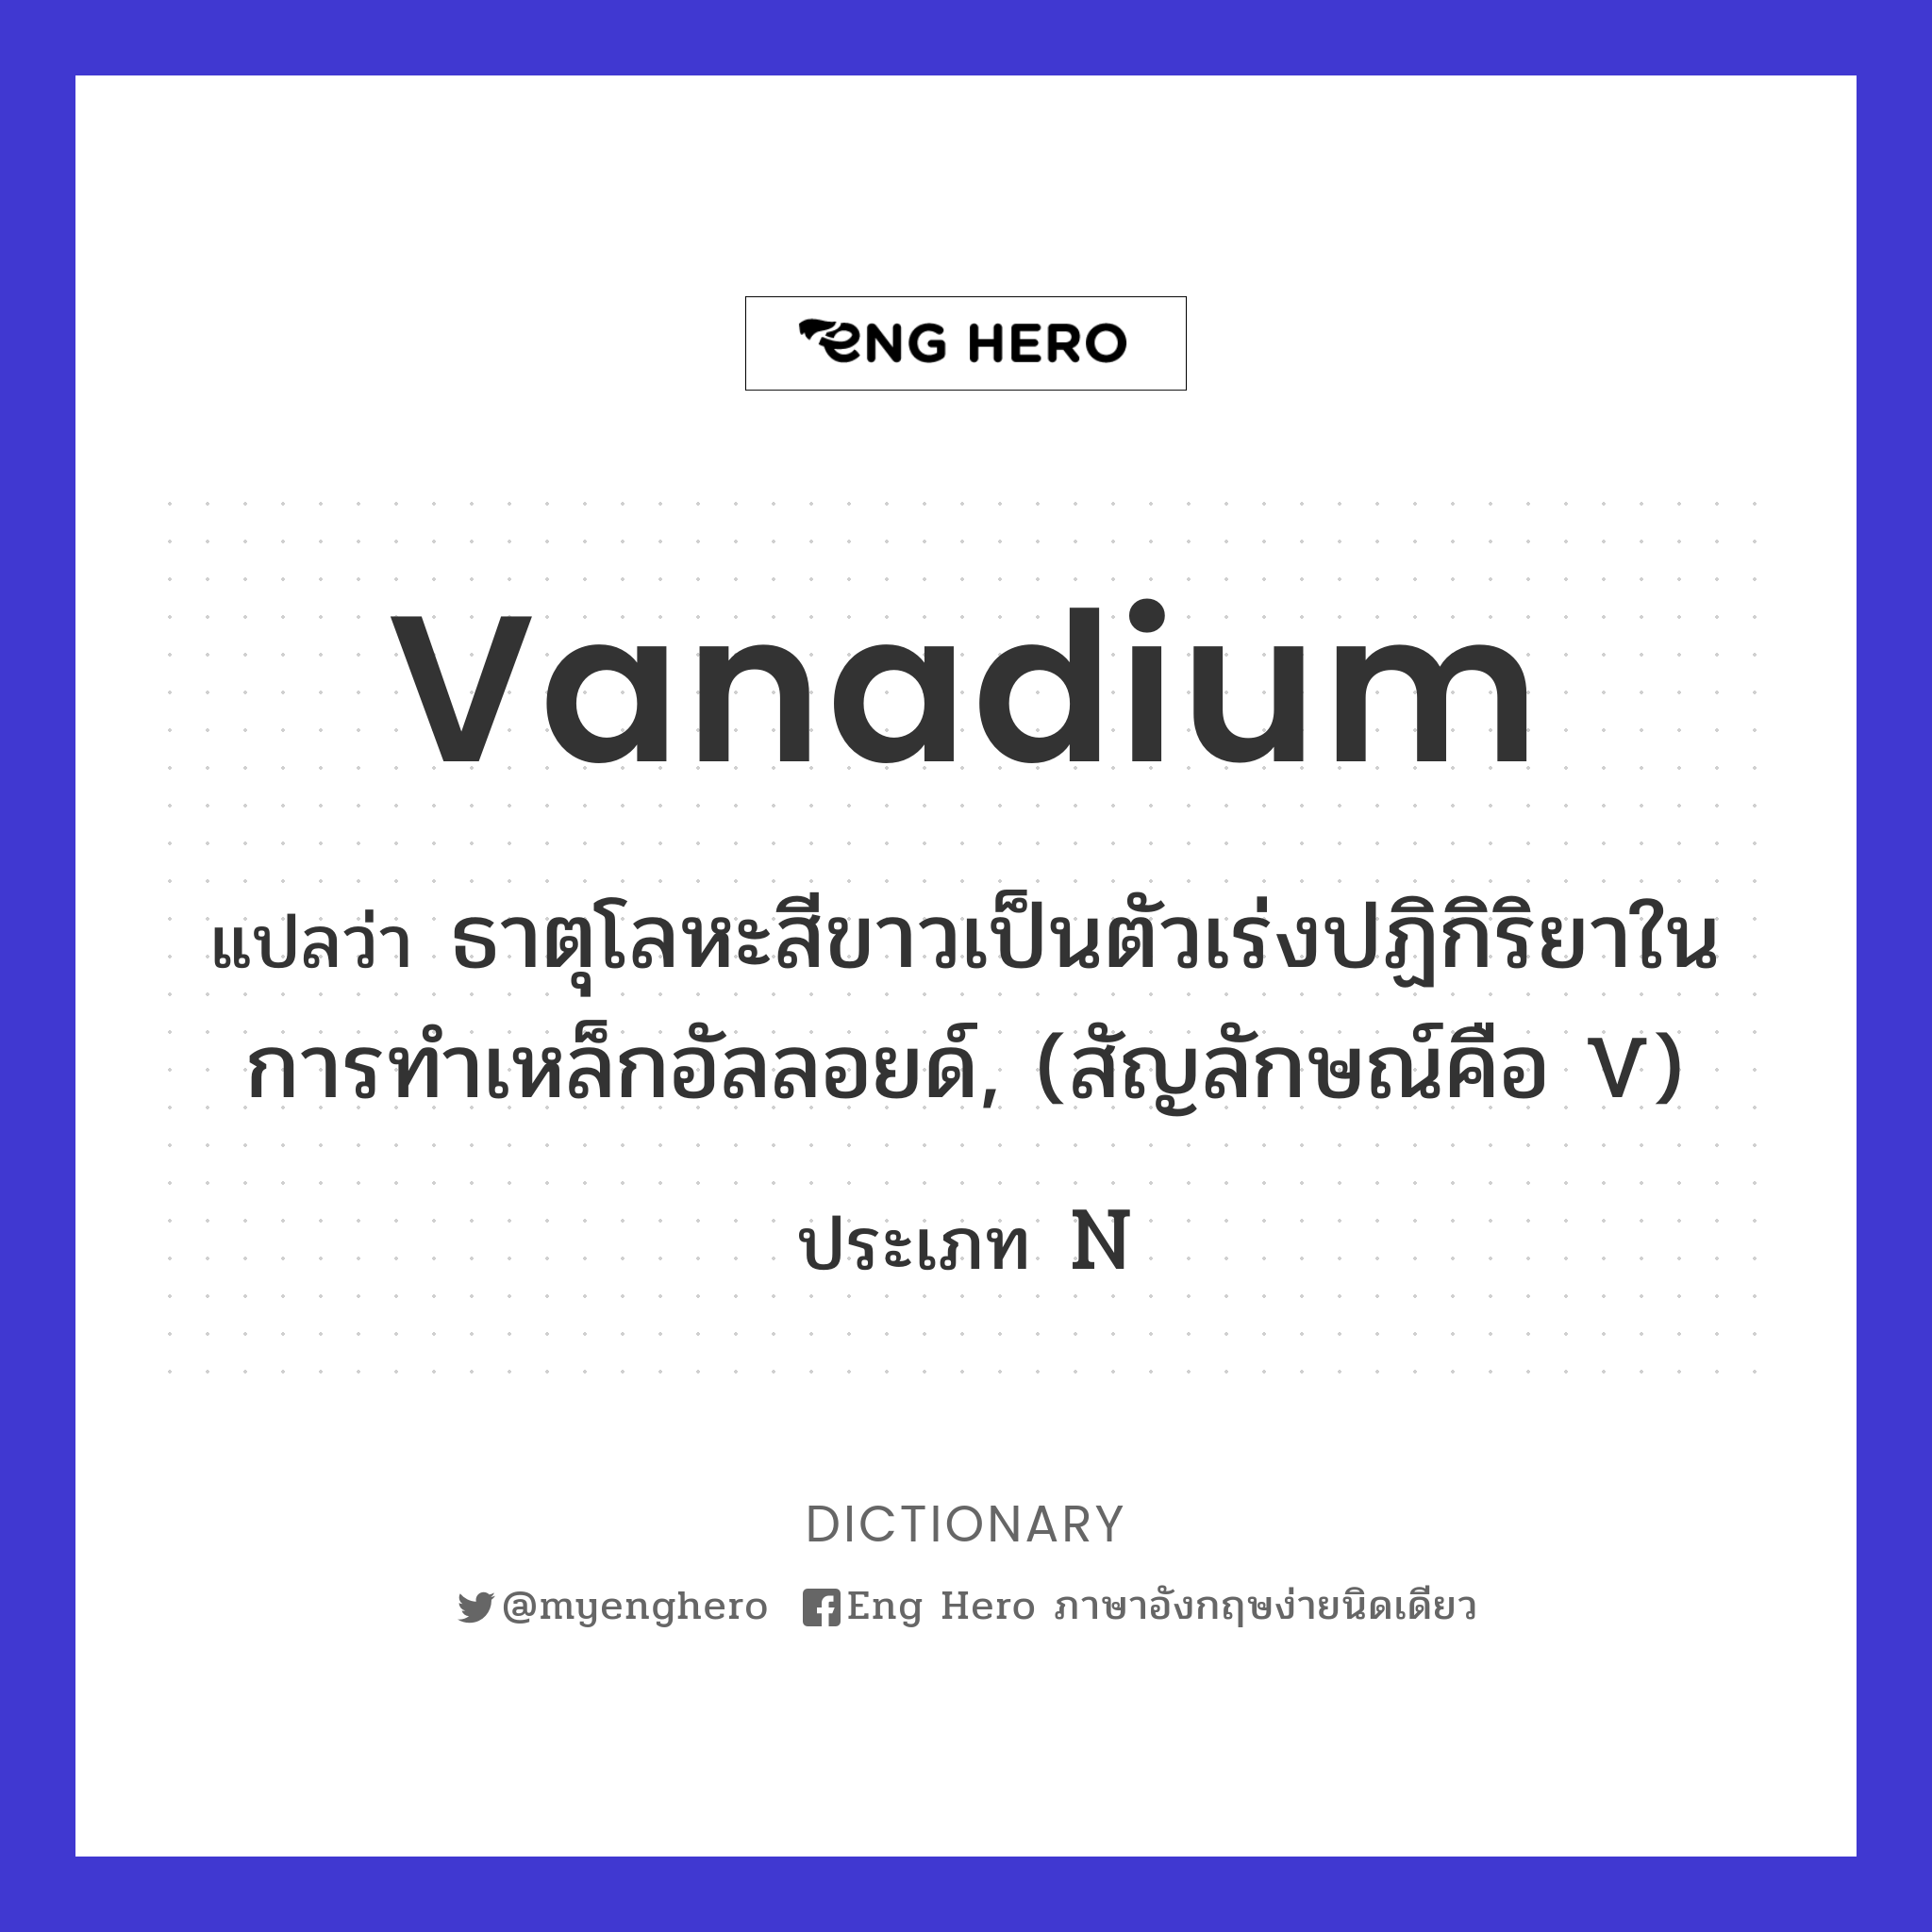 vanadium